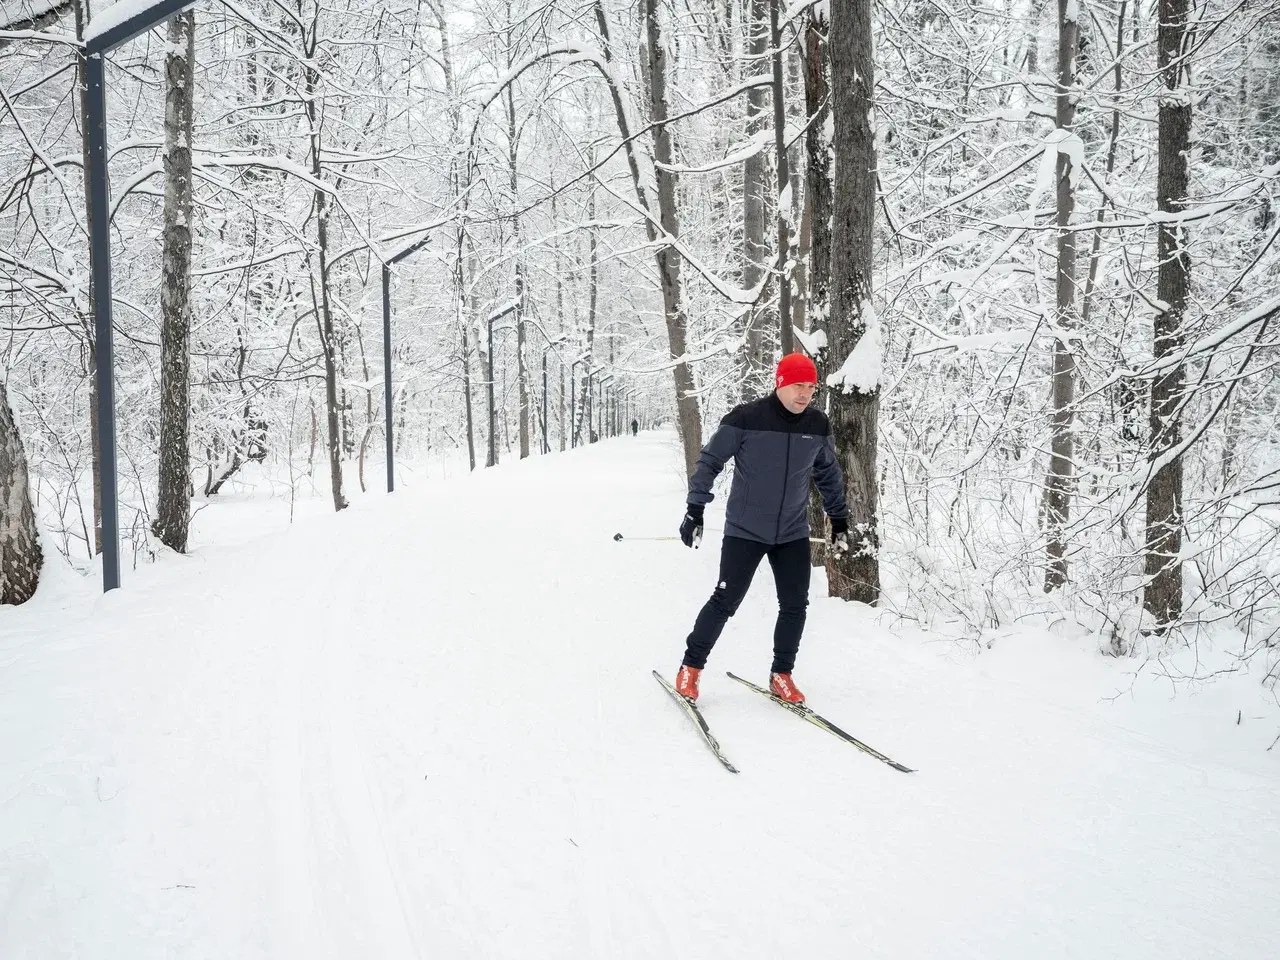 Спортсменам из Дубны доступны три освещенных лыжных маршрута разной протяженности